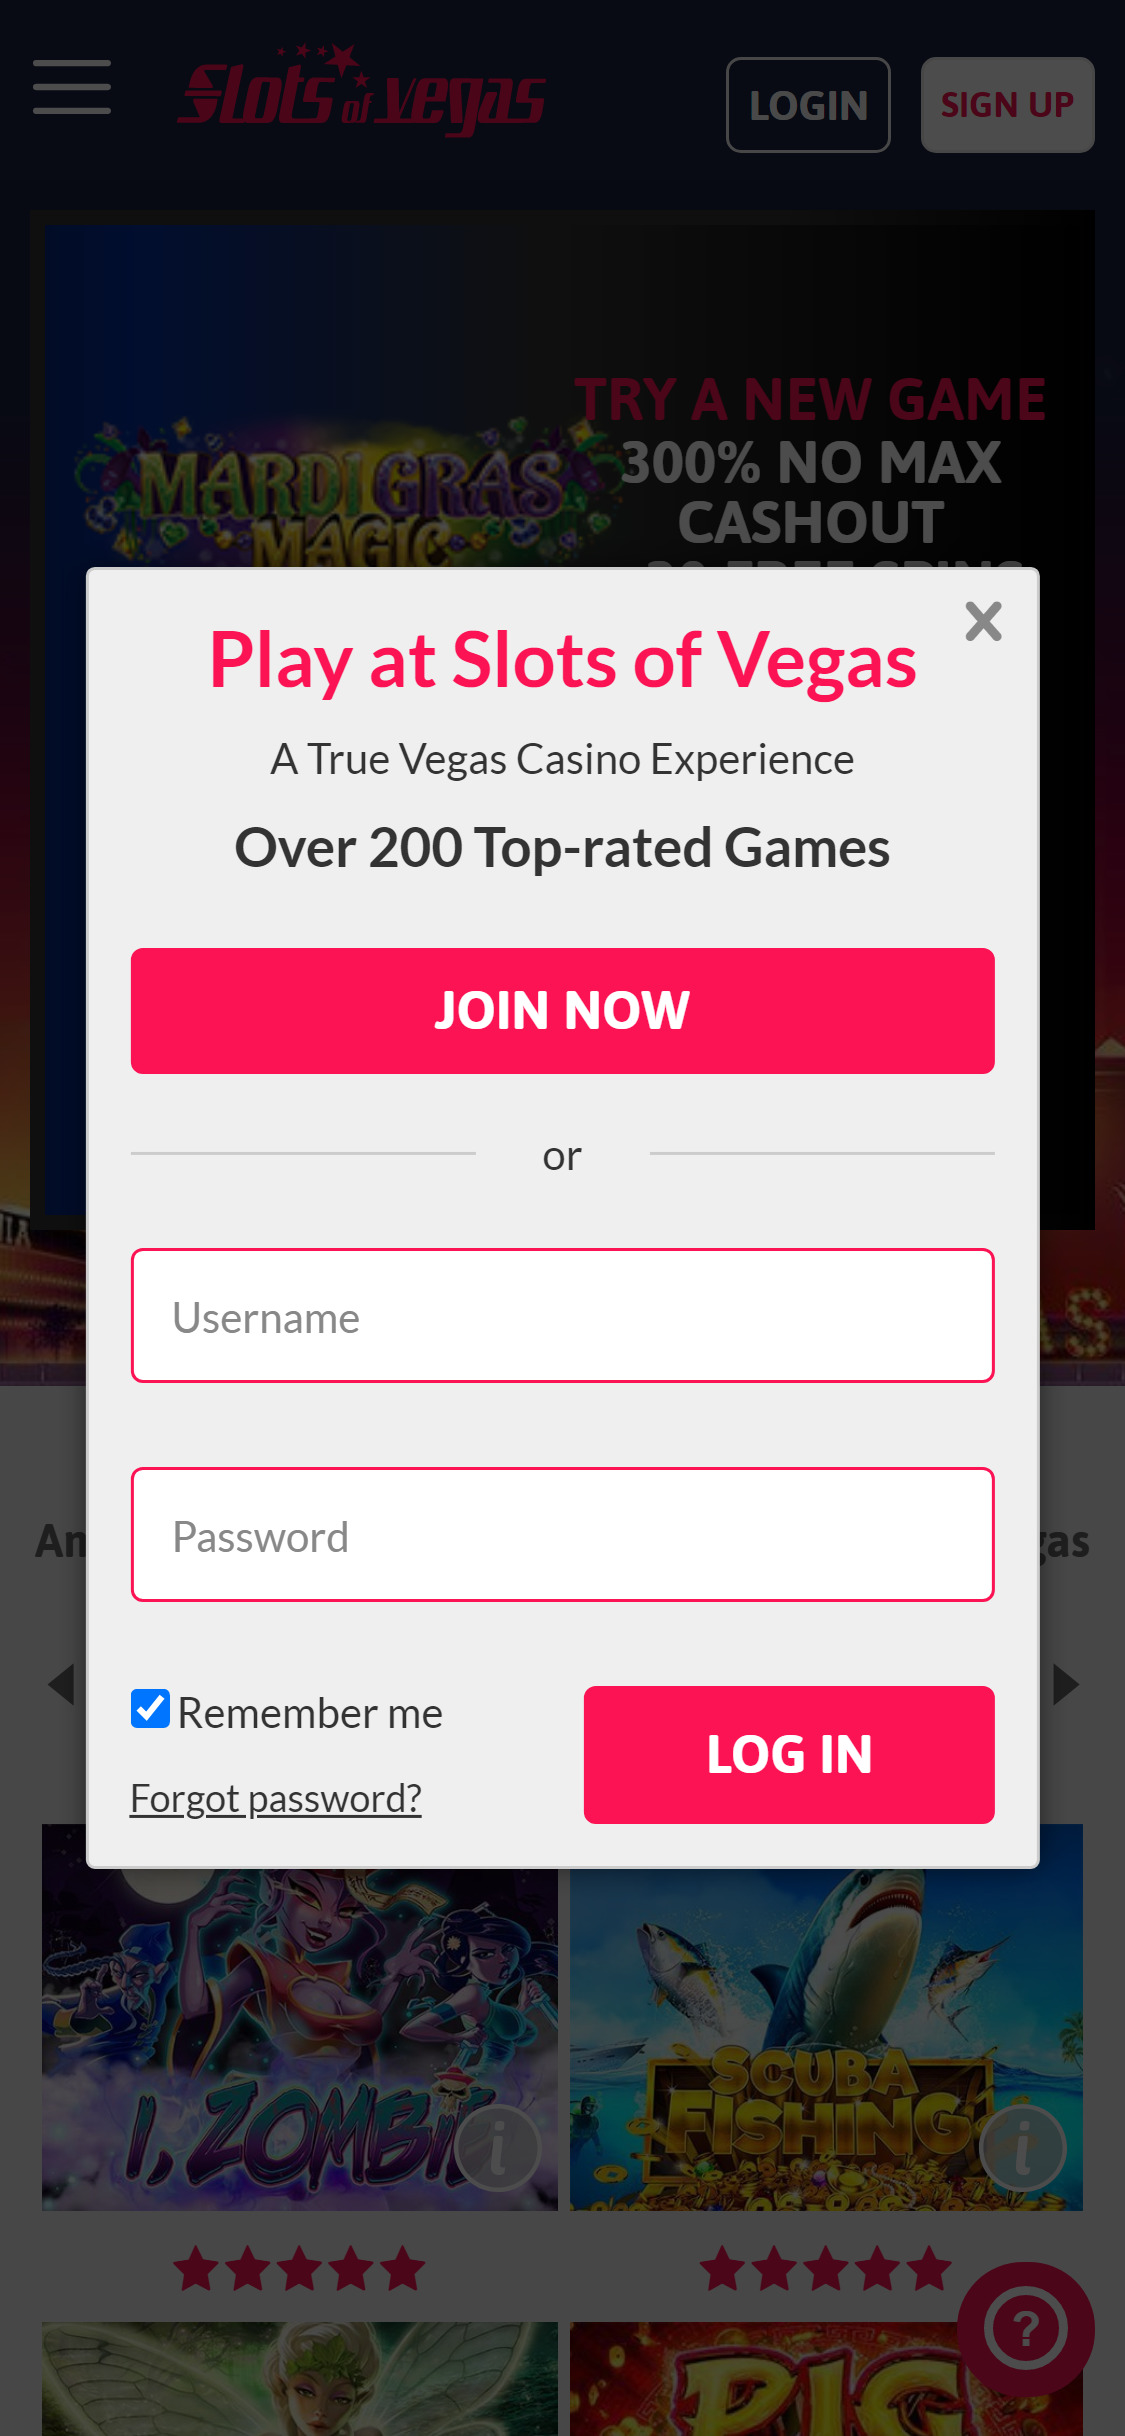 Slots of Vegas Casino Mobile Login Review